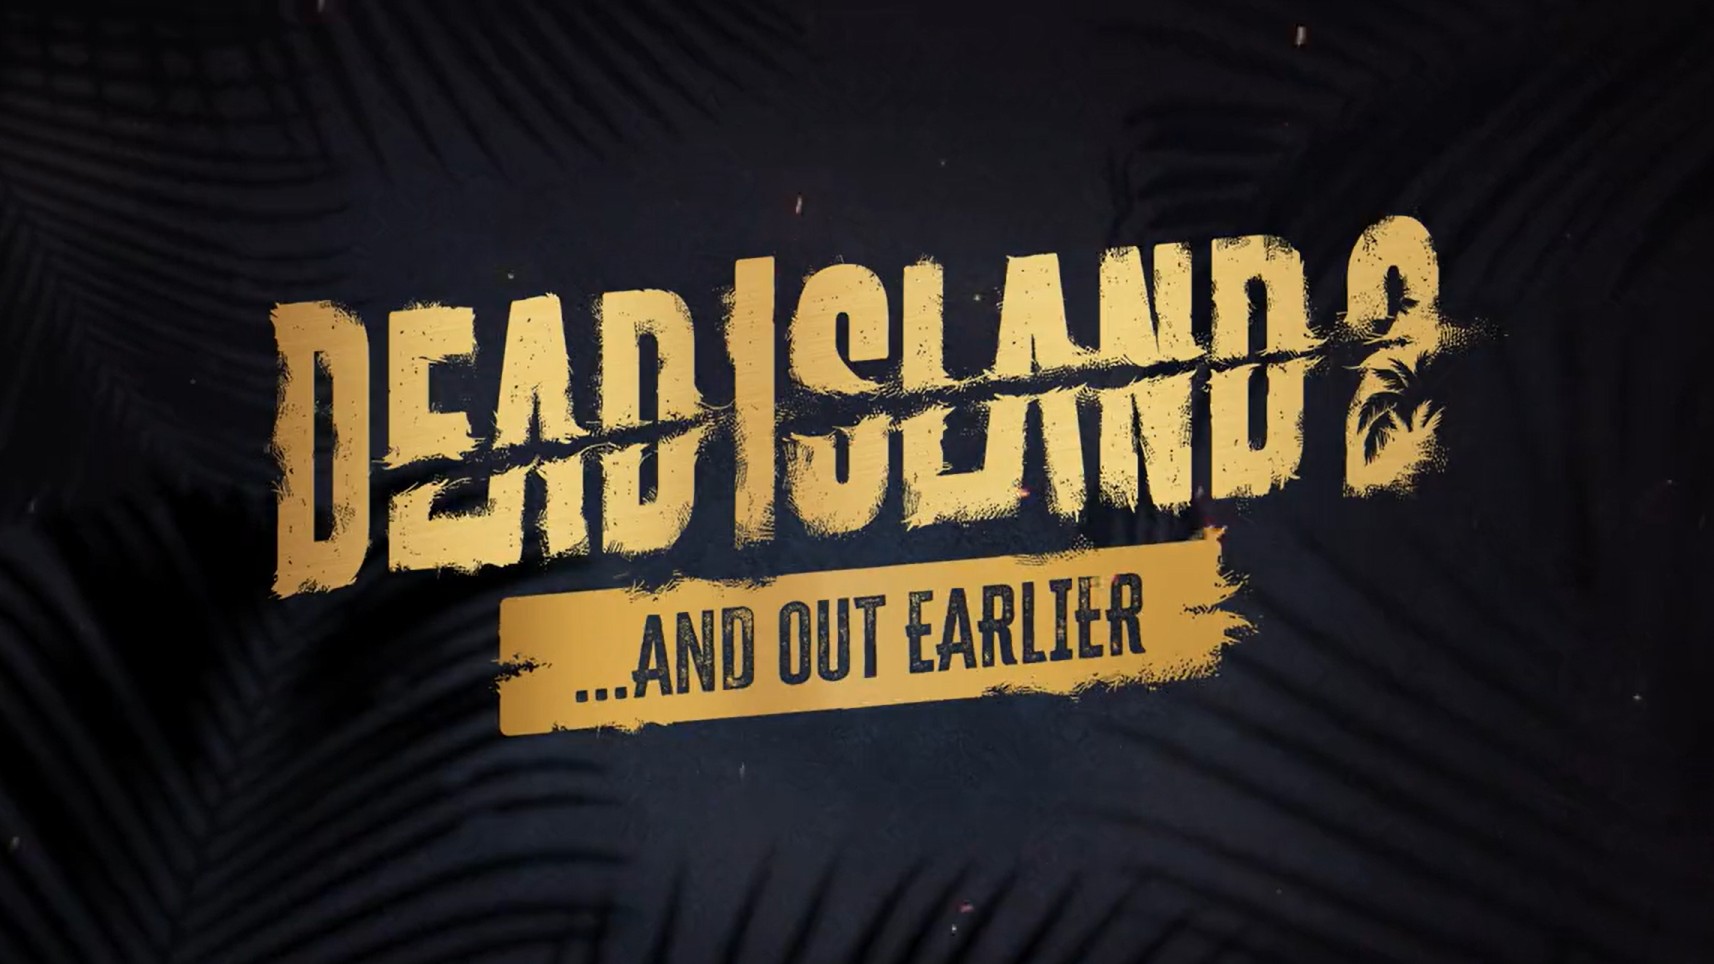 dead island 2 release